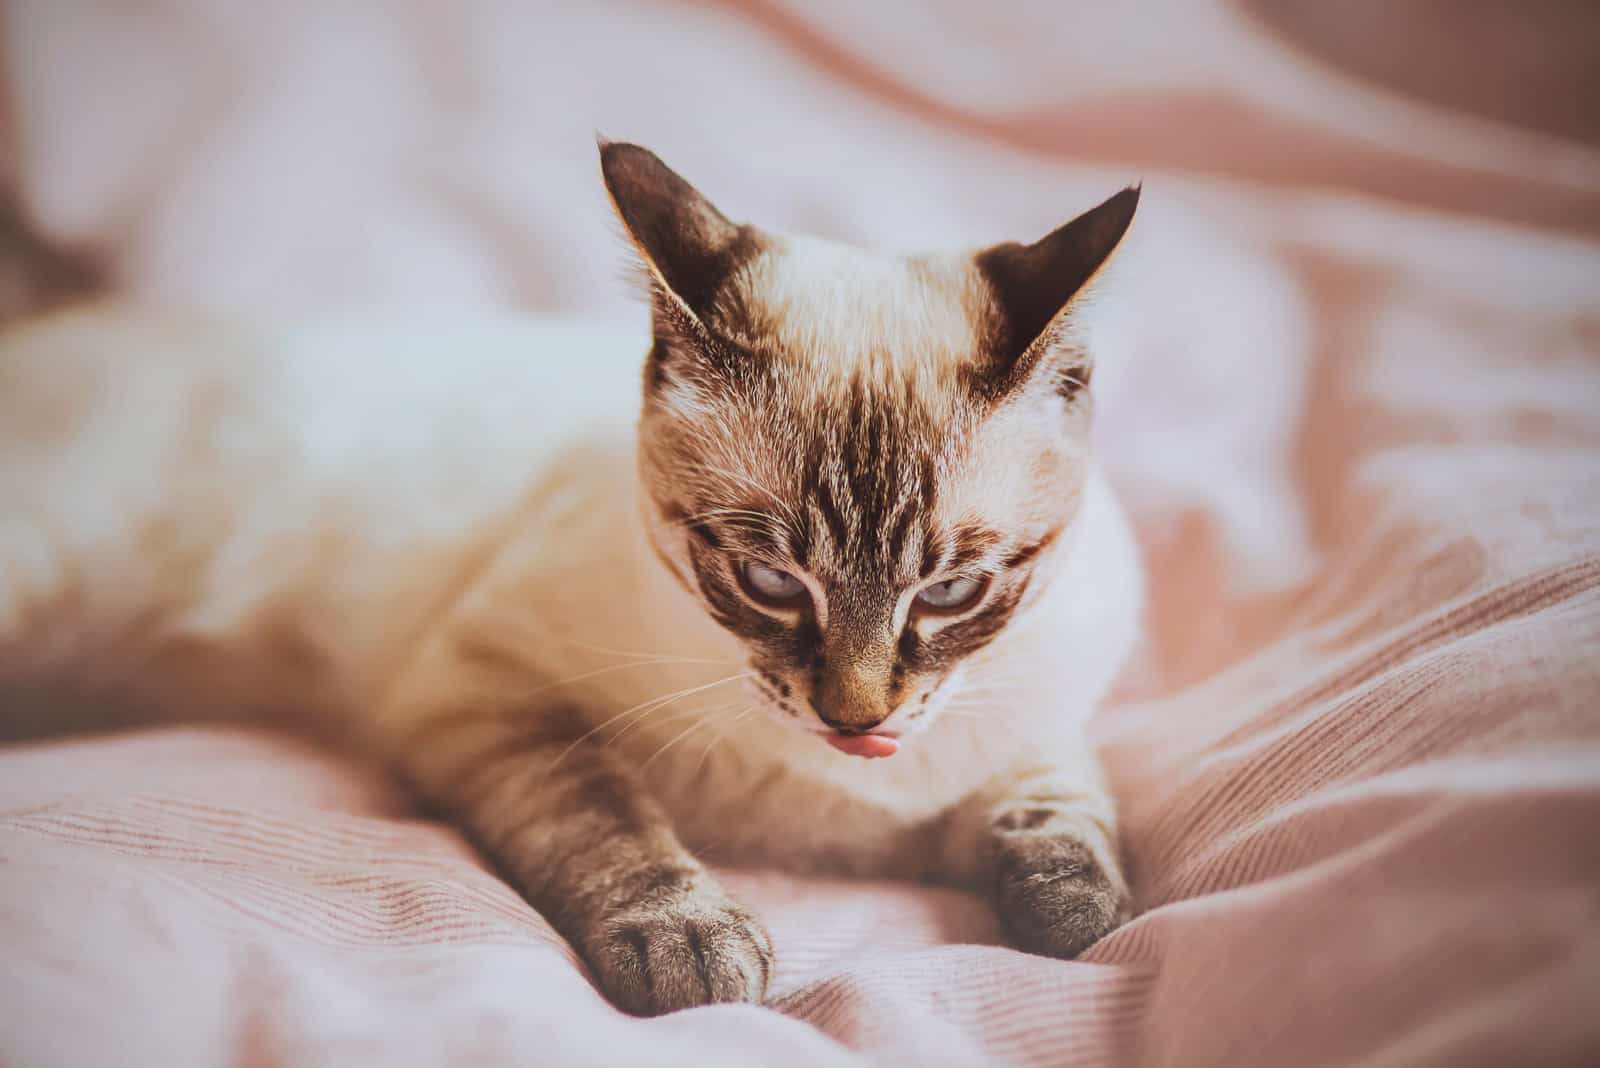 Cute tabby pet kitten is lying on a soft pink blanket